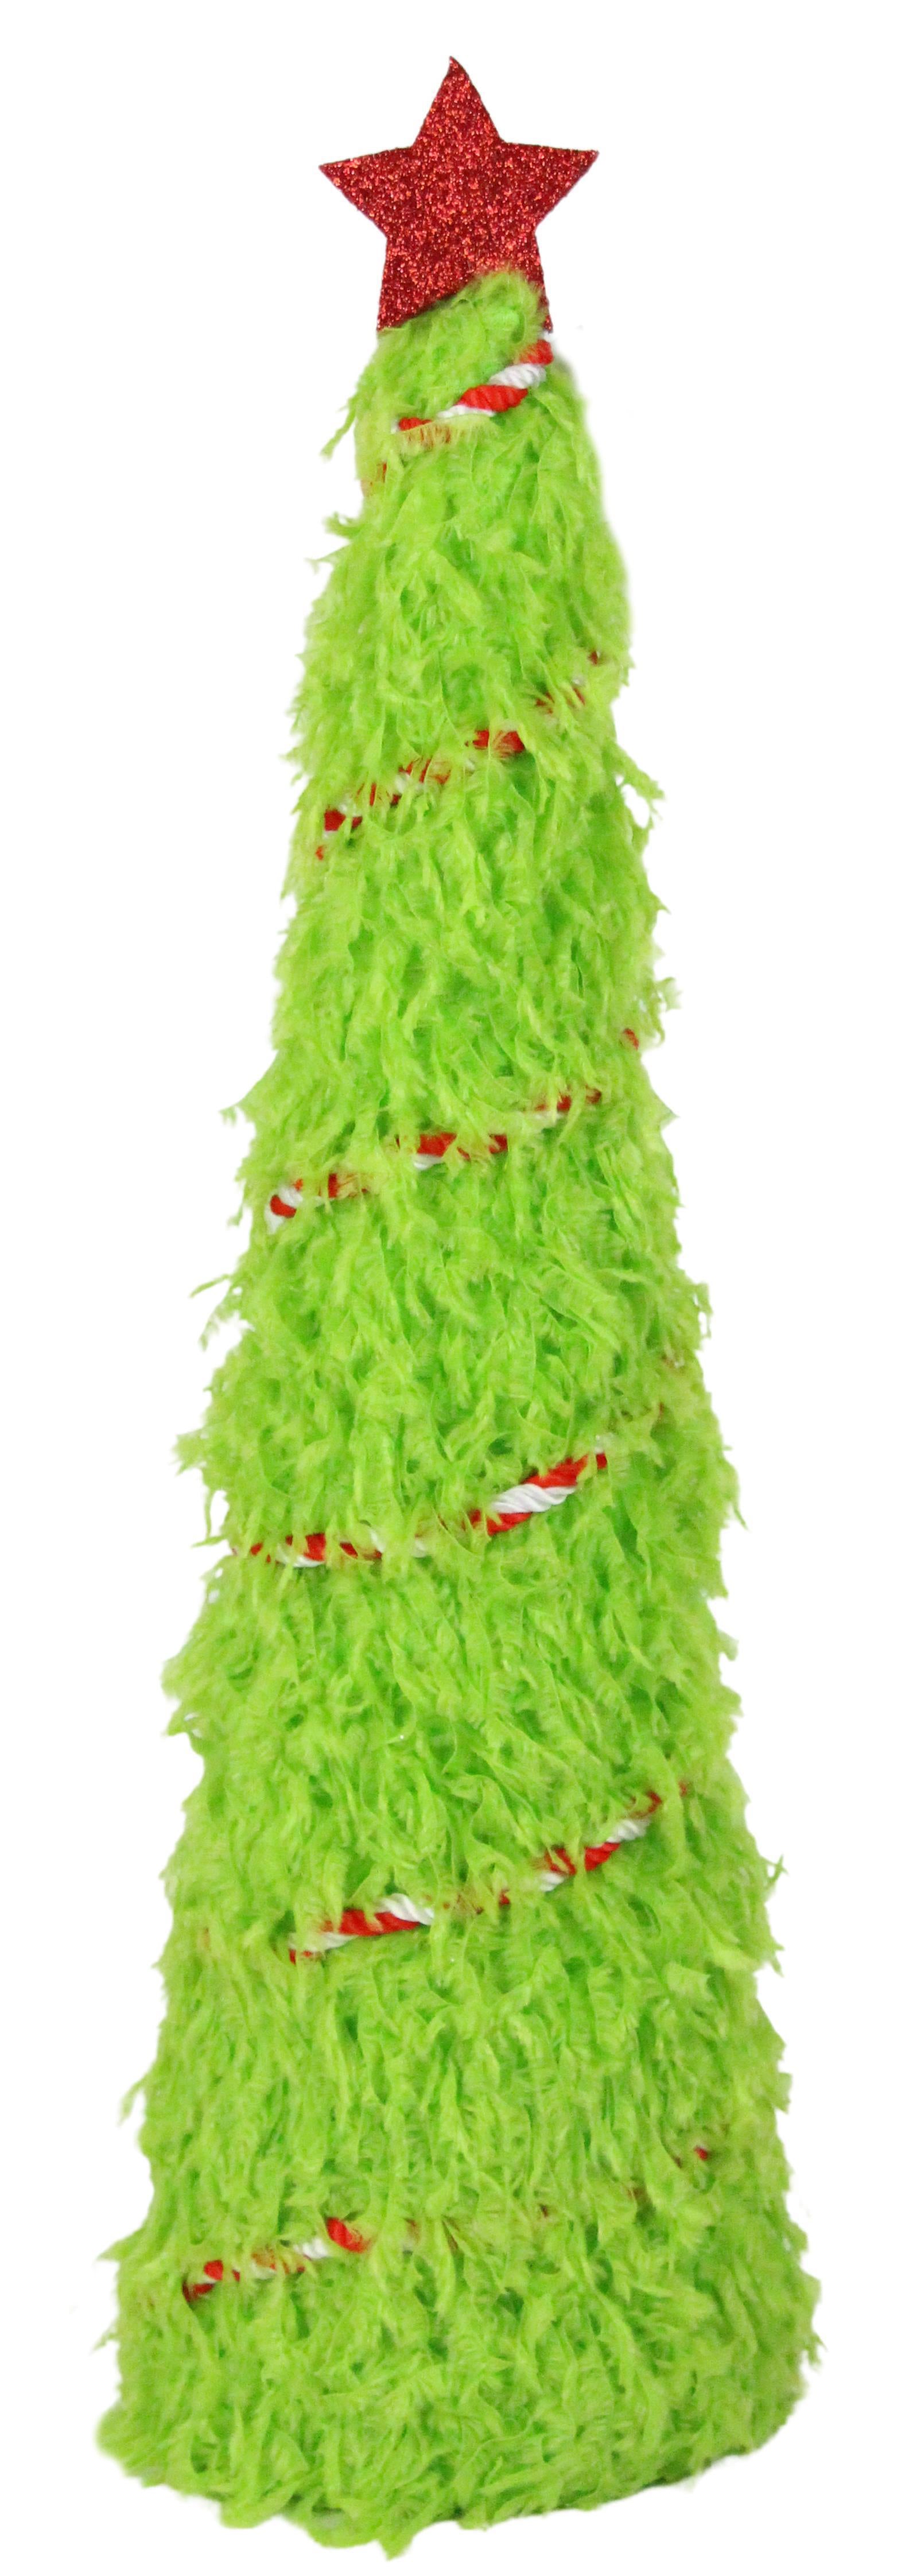 Green monster Christmas tree topper, green monster legs tree topper,  Christmas tree topper, green monster topper, whimsical tree topper